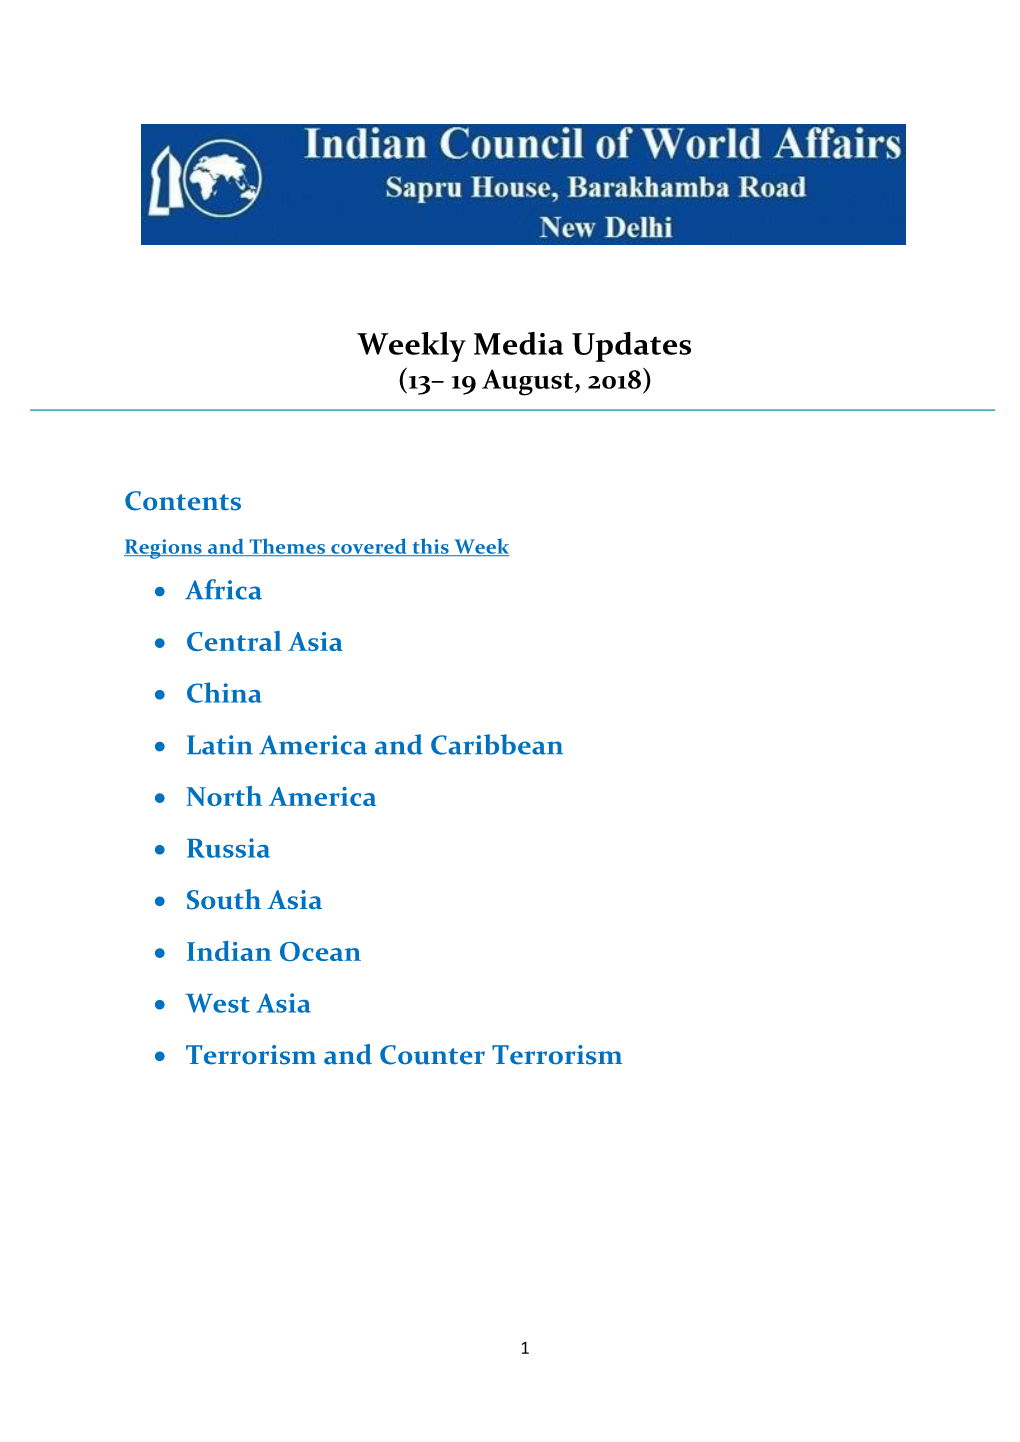 Weekly Media Updates (13– 19 August, 2018)